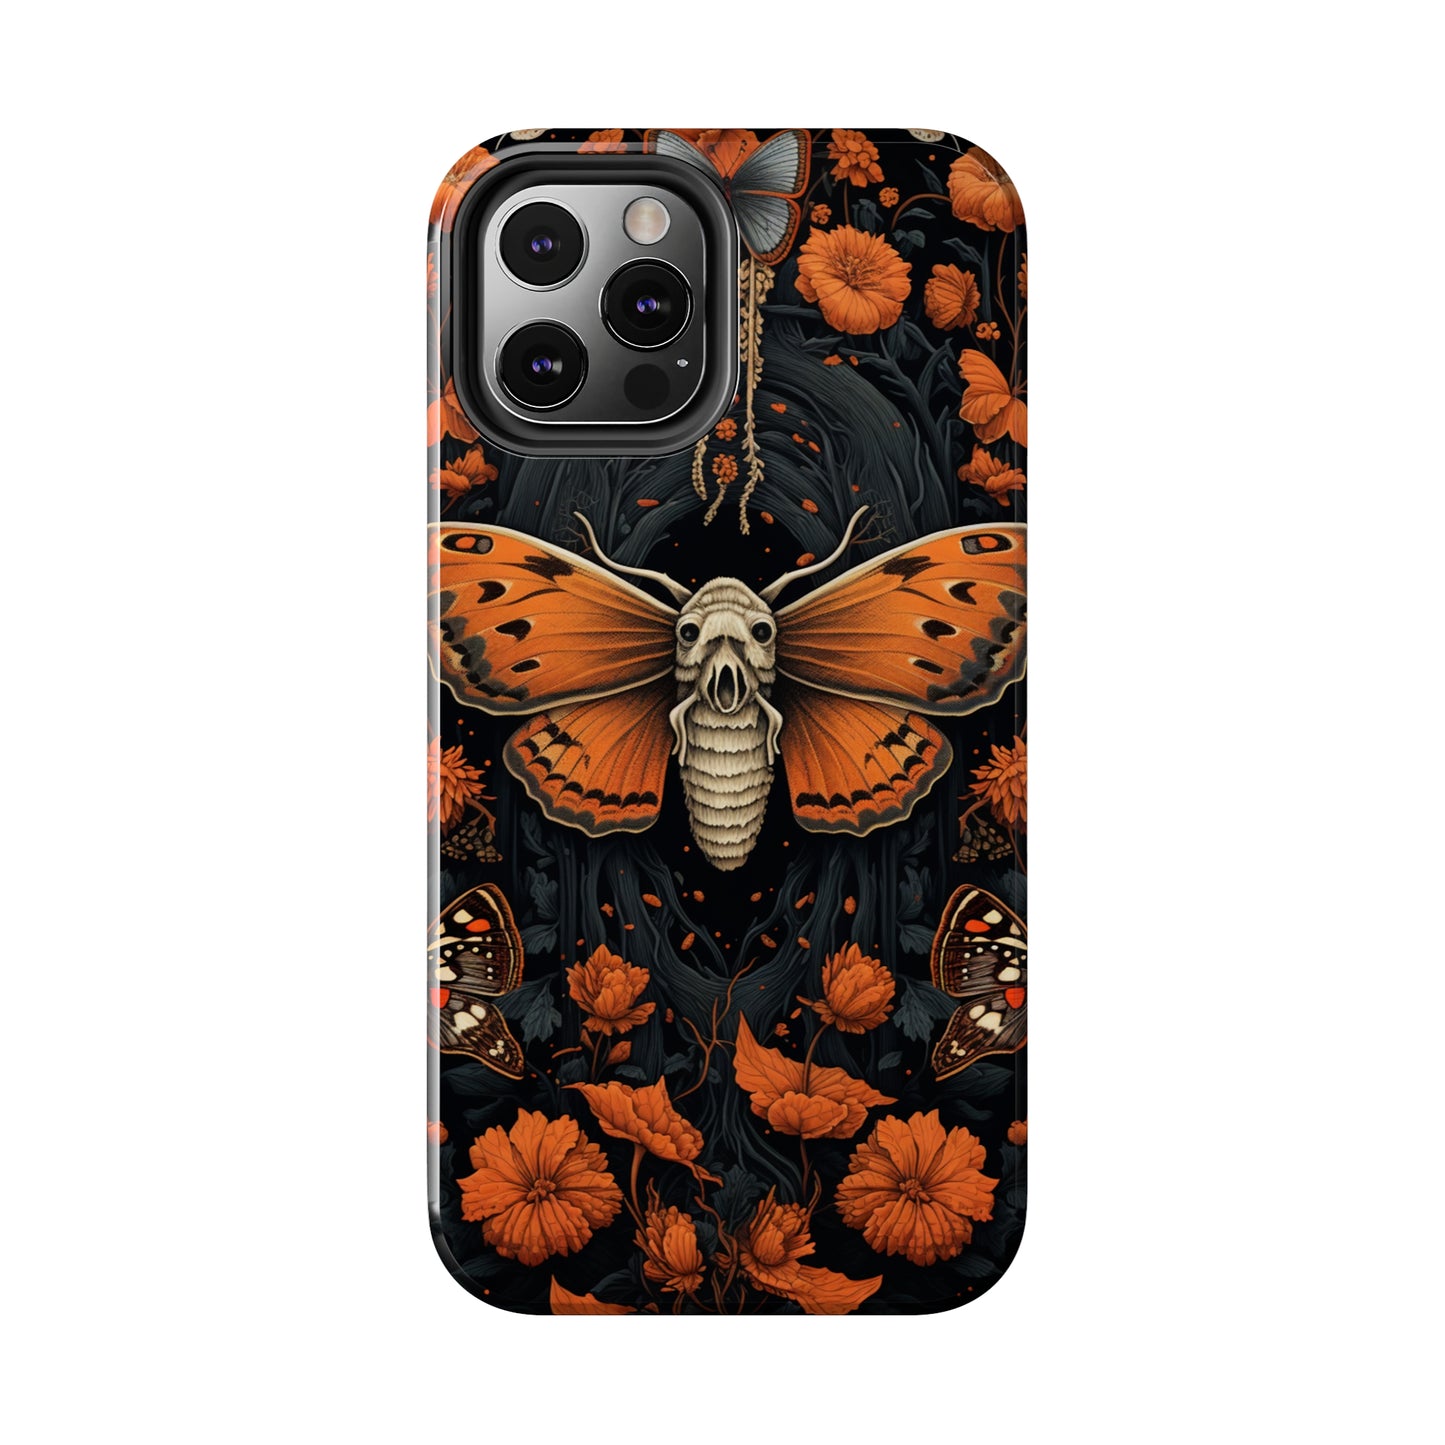 Goth iPhone case